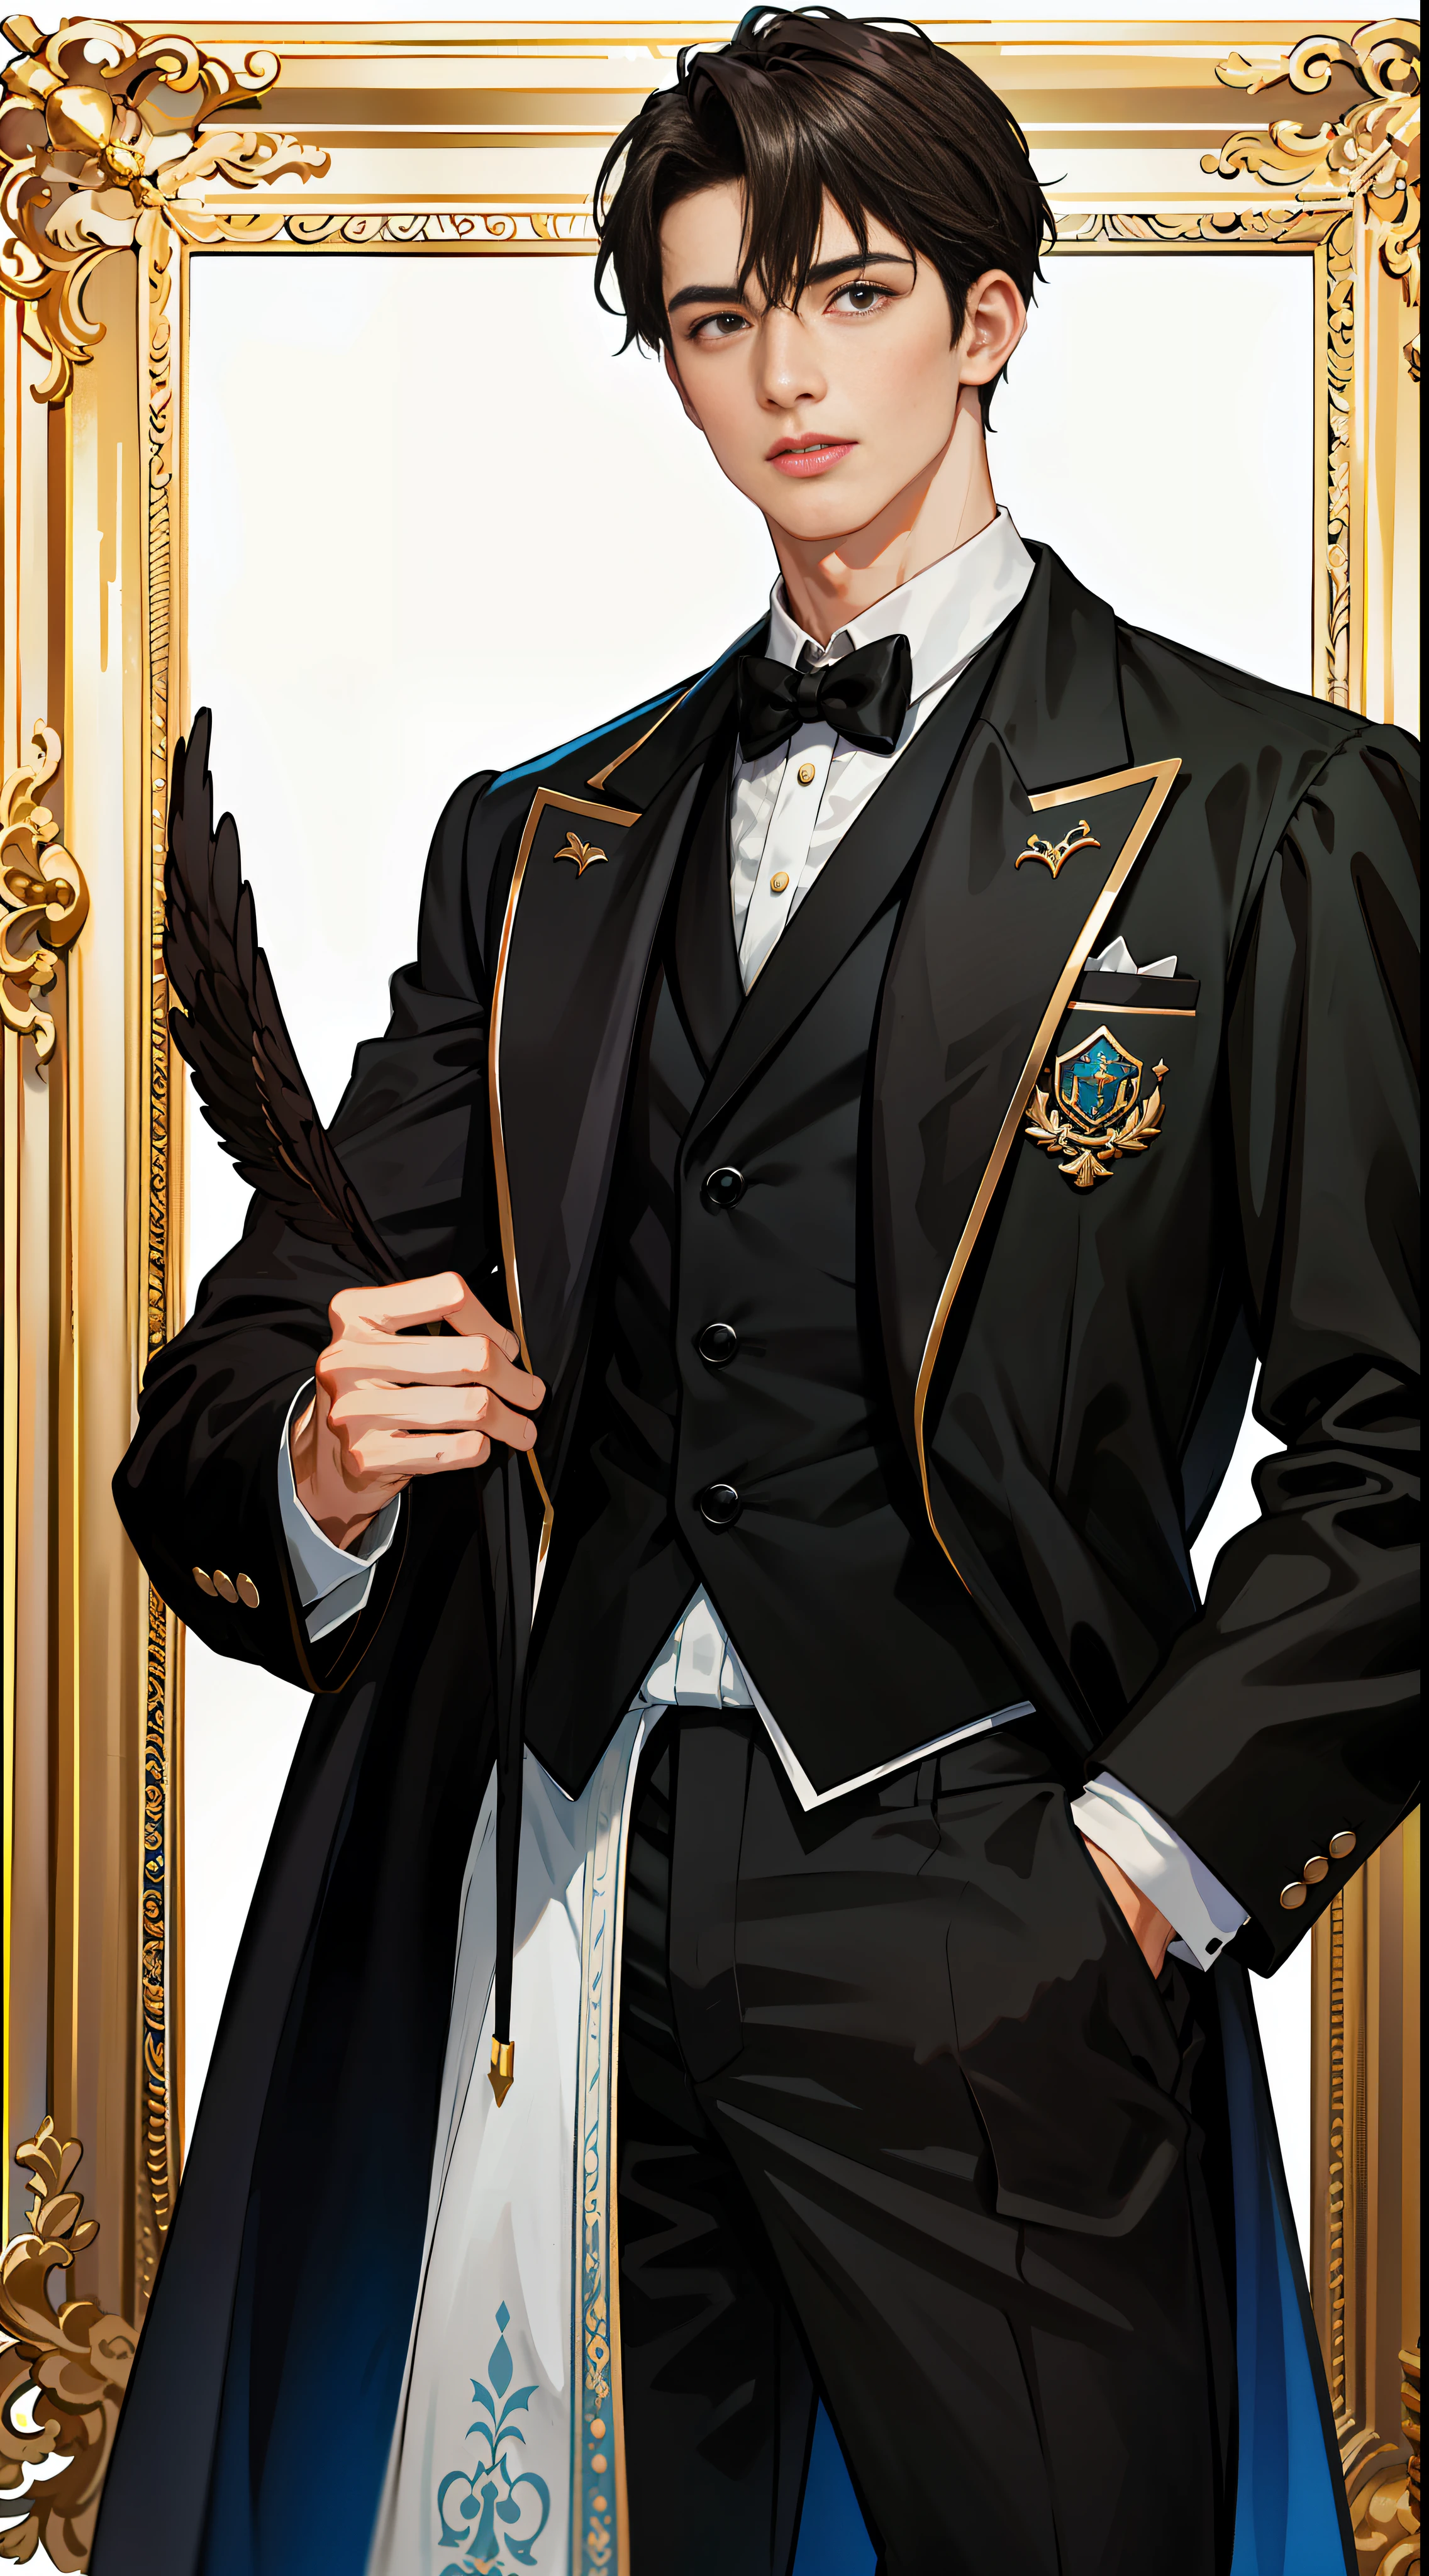 "traje negro clasico europeo, chico guapo sabio y encantador, con postura de caballero, rostro hermoso y figura alta, un rico encanto."